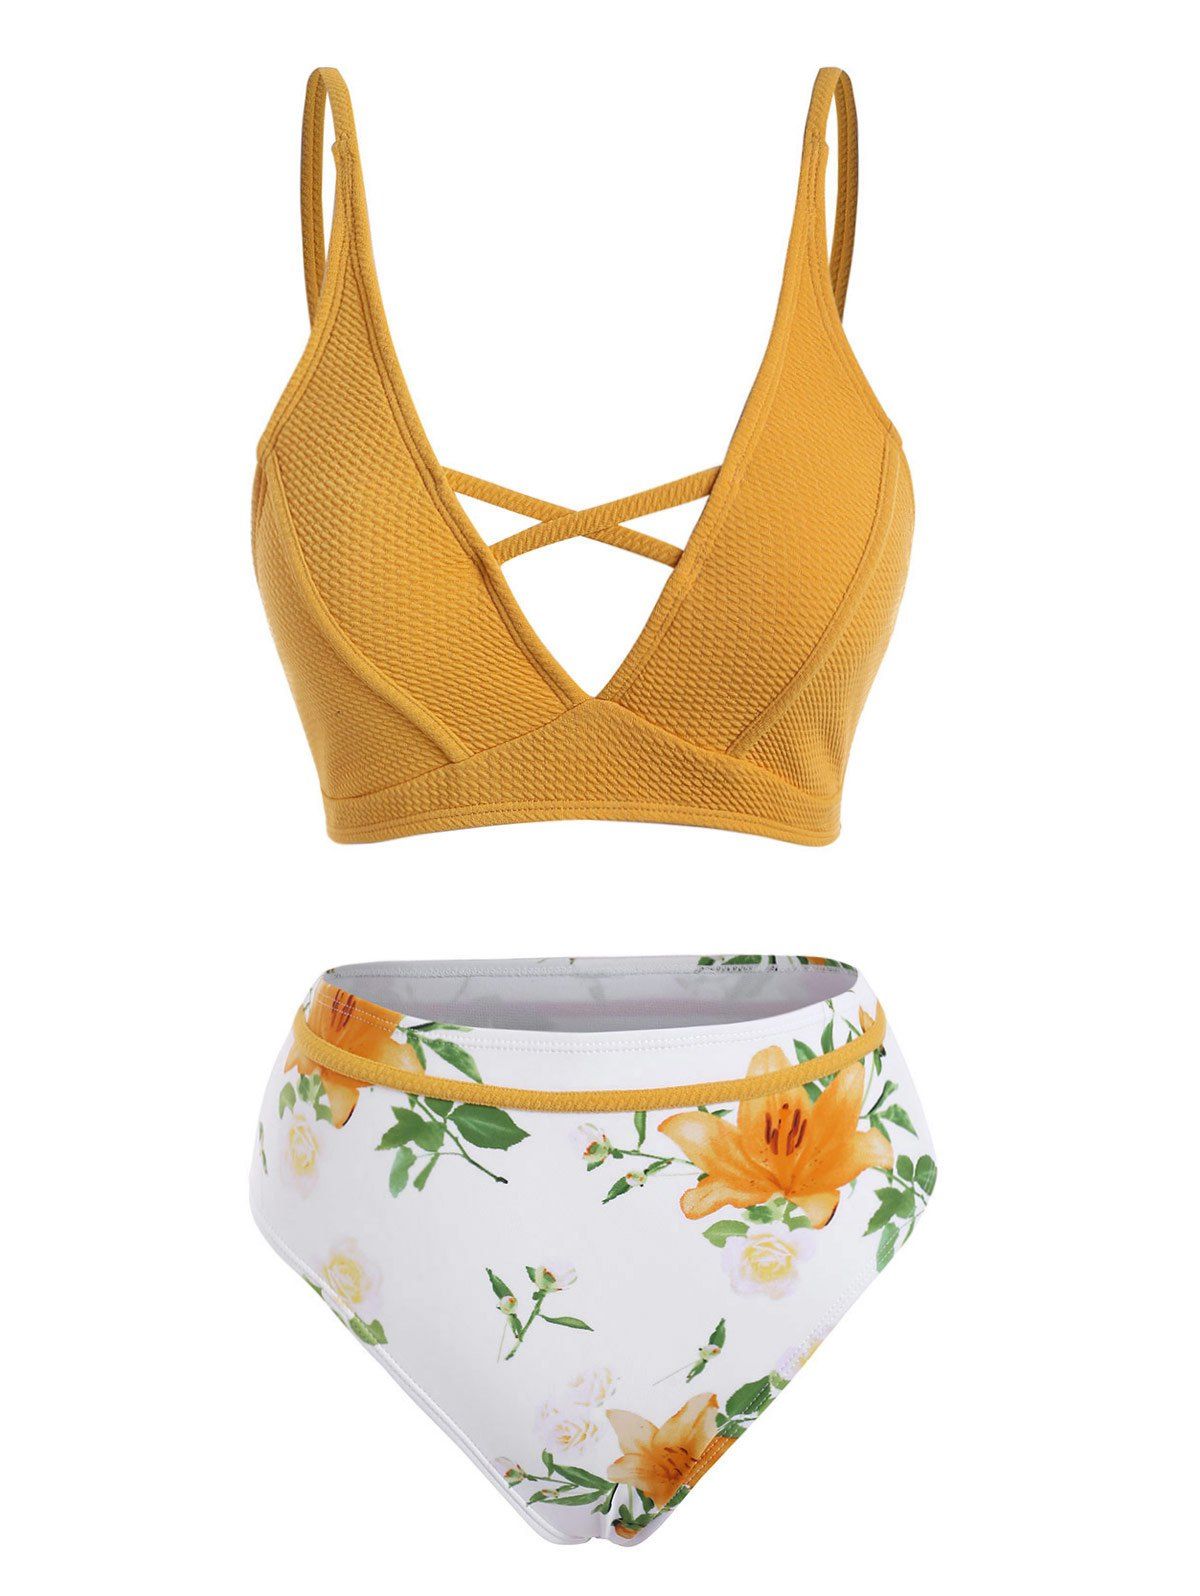 Flower Print Textured Criss Cross Bikini Swimwear - BEE YELLOW S